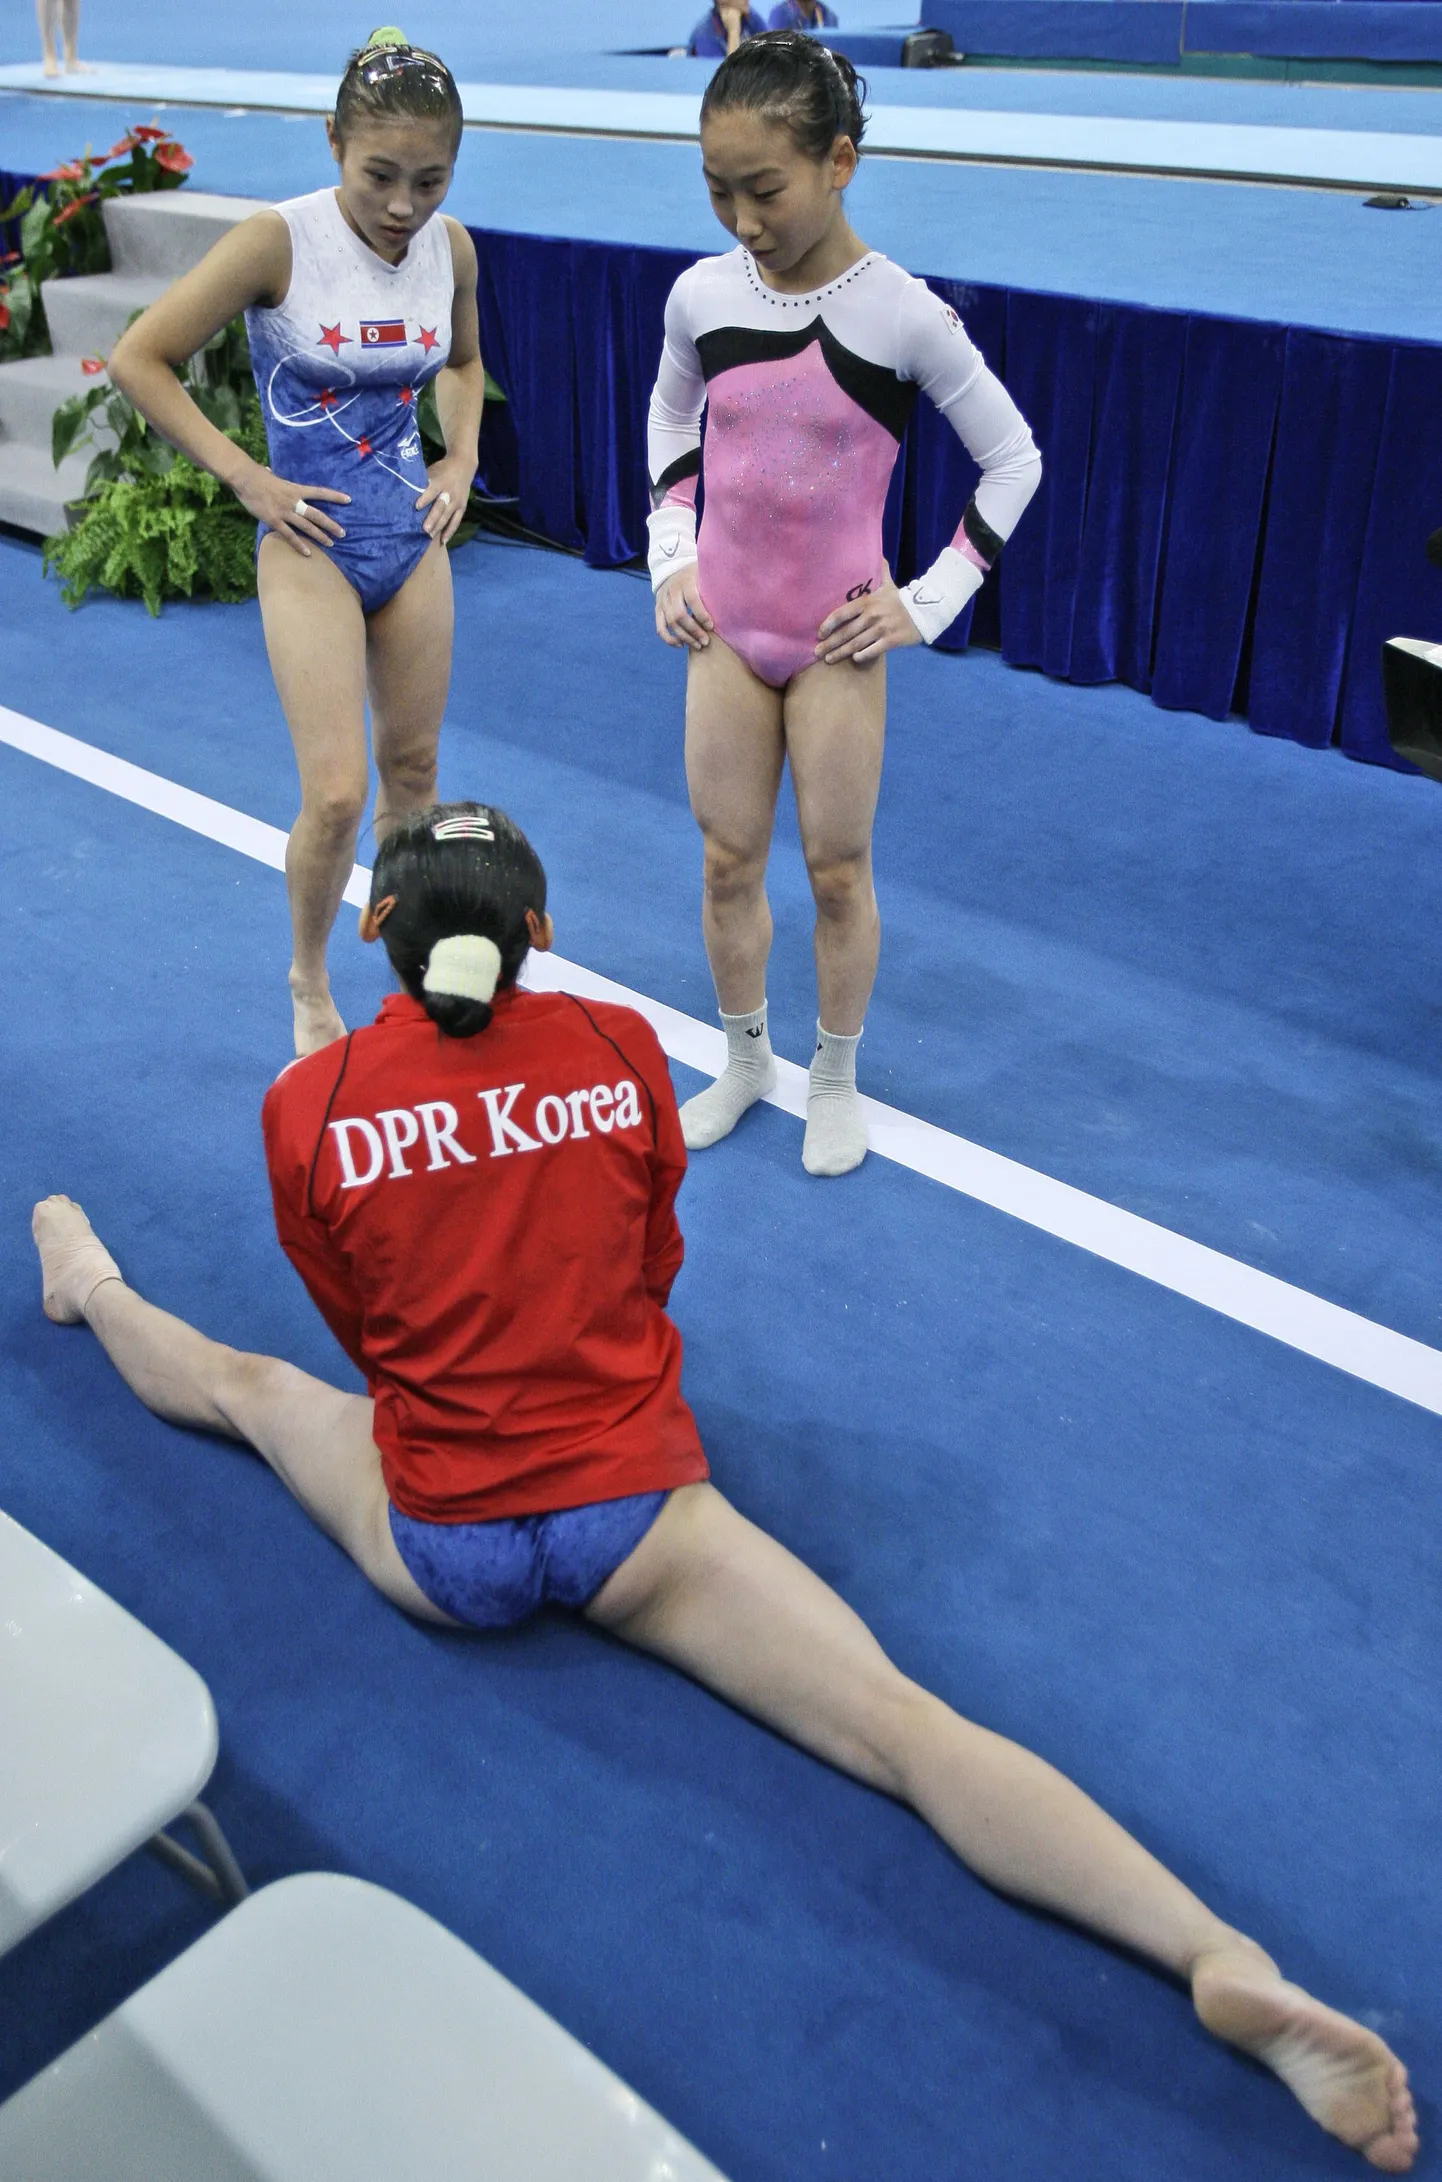 Lõune-Korea võimleja (paremal) võistluse eel vestlemas Põhja-Korea sportlastega.